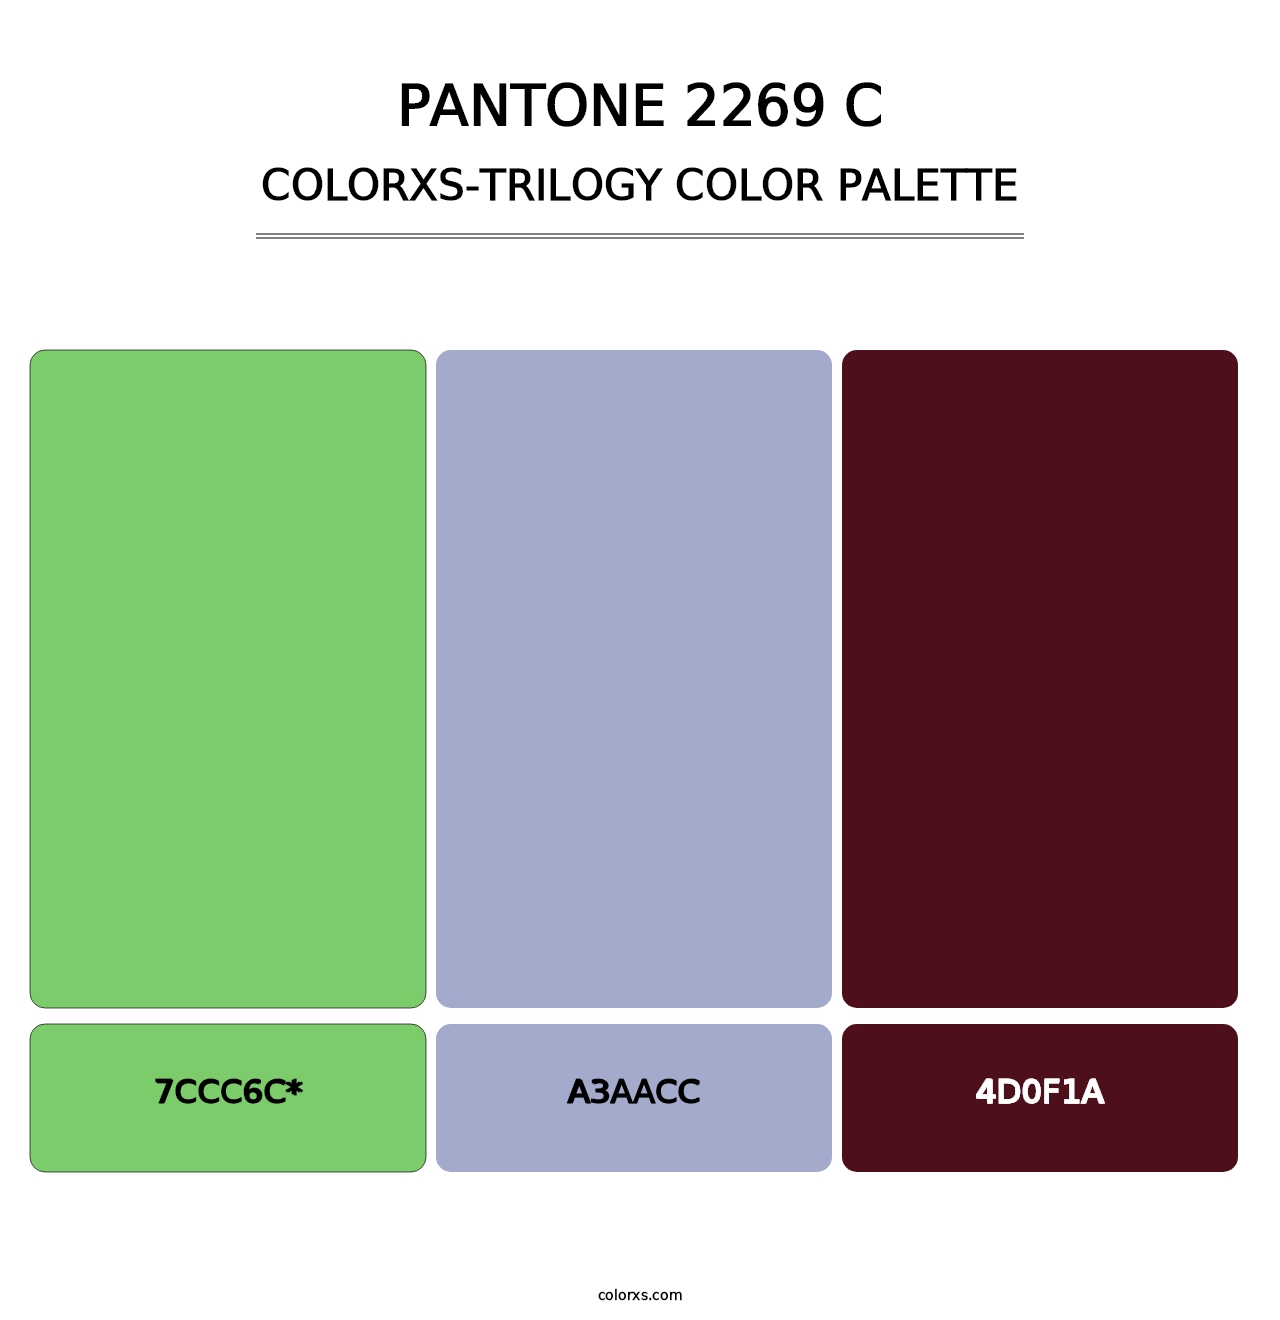 PANTONE 2269 C - Colorxs Trilogy Palette